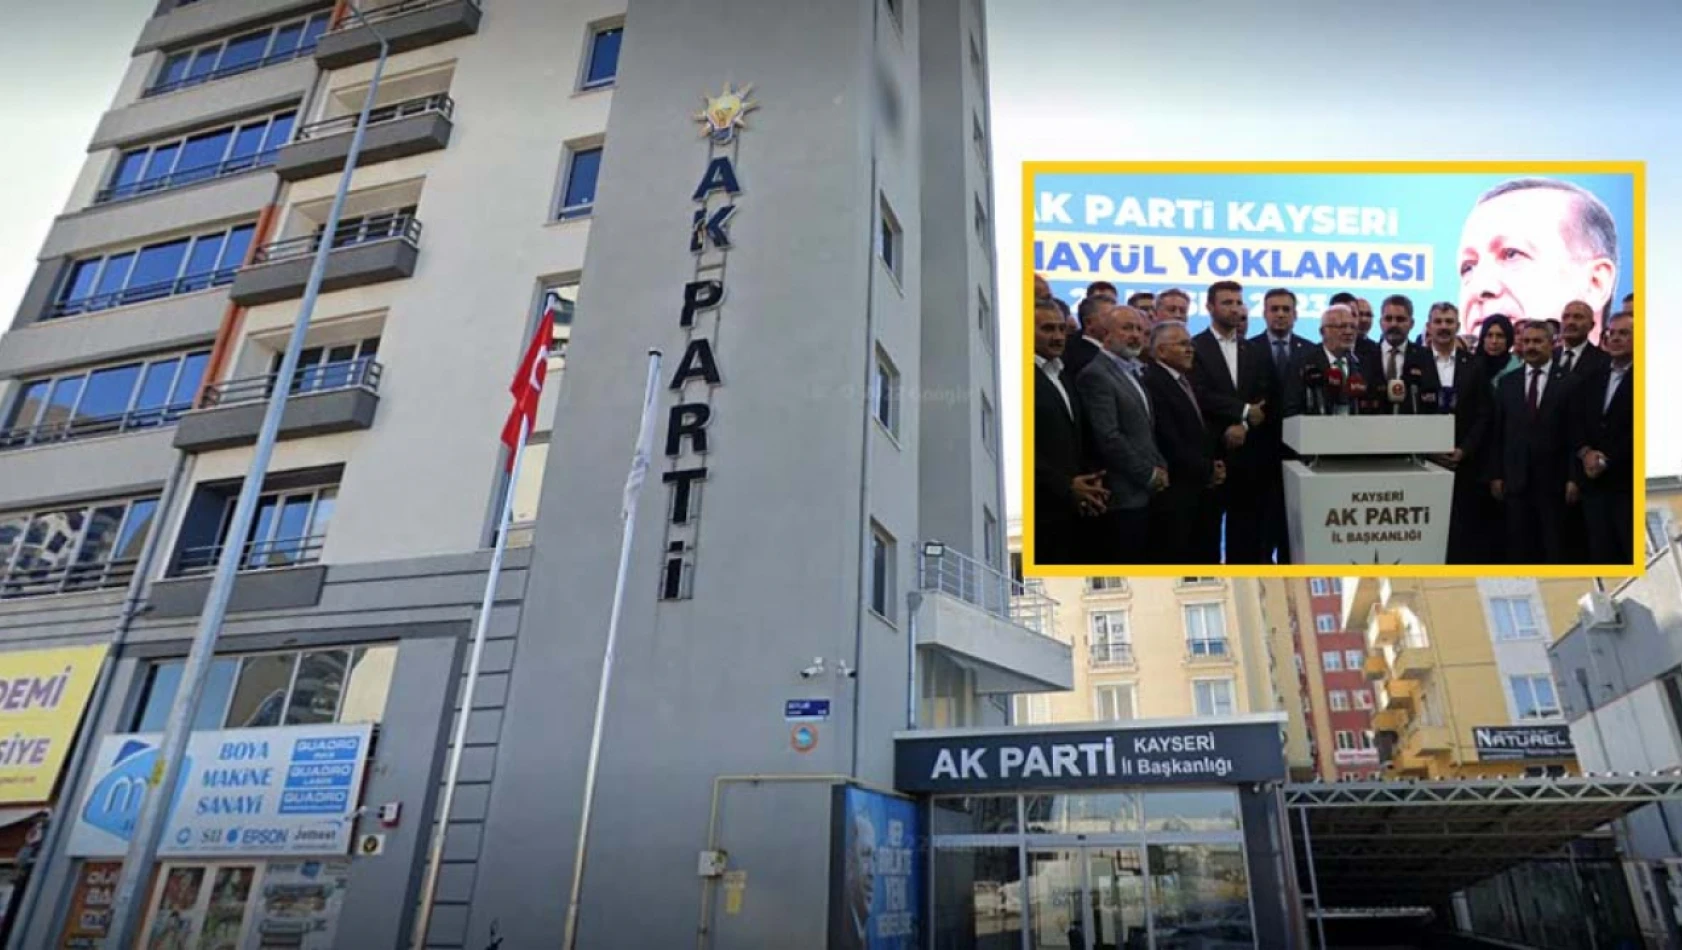 İşte AK Parti Kayseri temayül sonuçları!